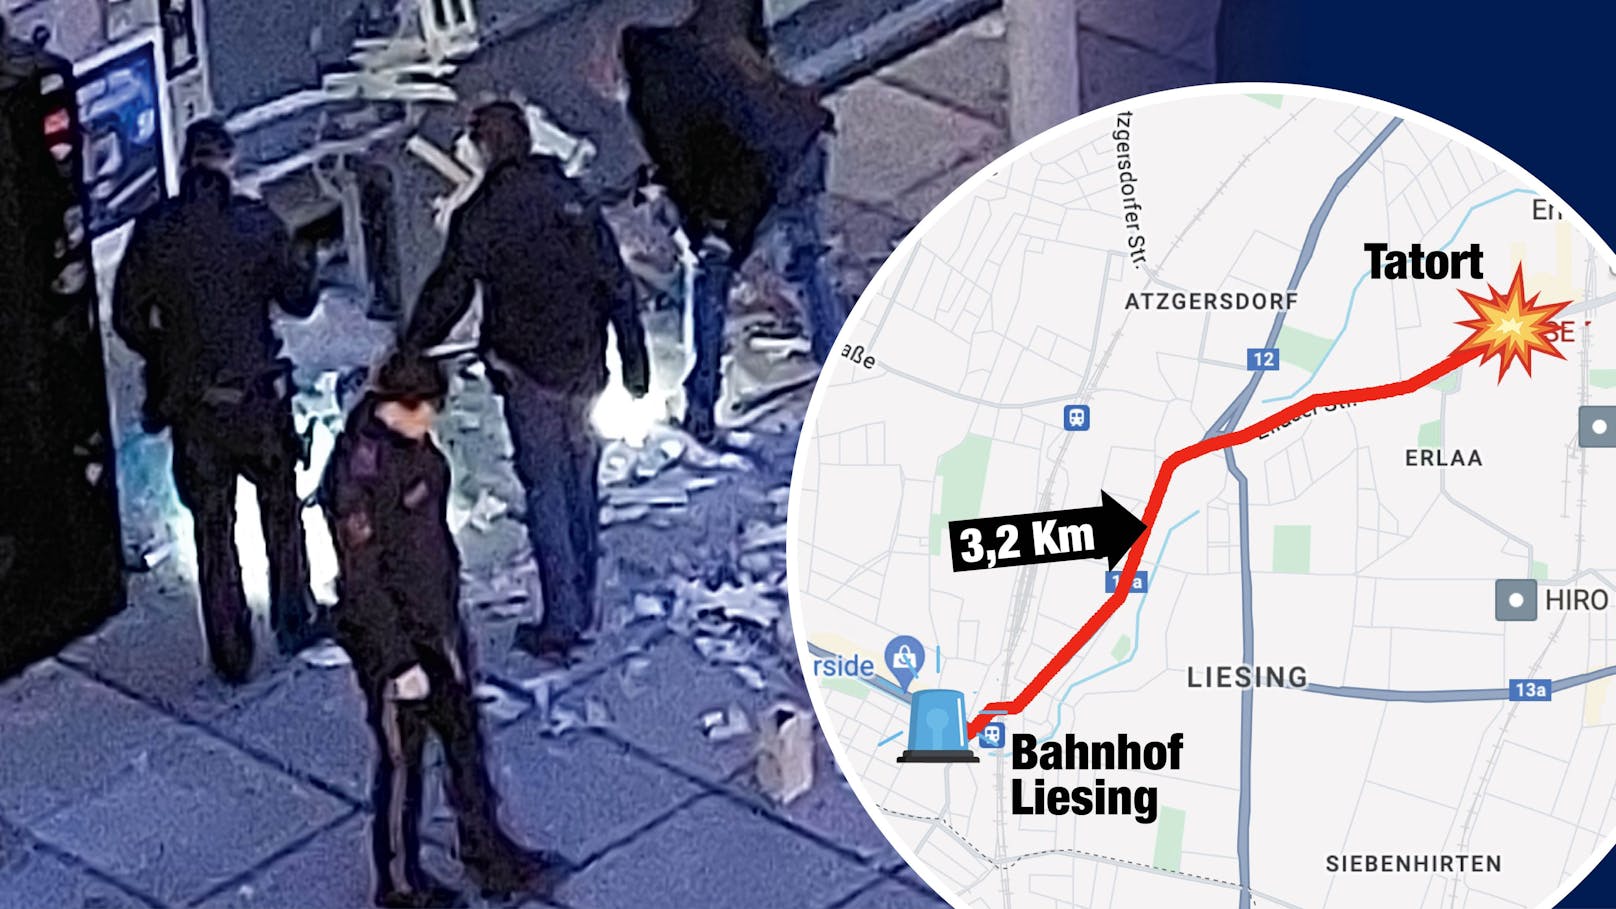 24.03.2024: <a data-li-document-ref="120027389" href="https://www.heute.at/s/tschick-coup-in-wien-wenige-meter-vor-polizeiinspektion-120027389">Tschick-Coup in Wien wenige Meter vor Polizeiinspektion</a>